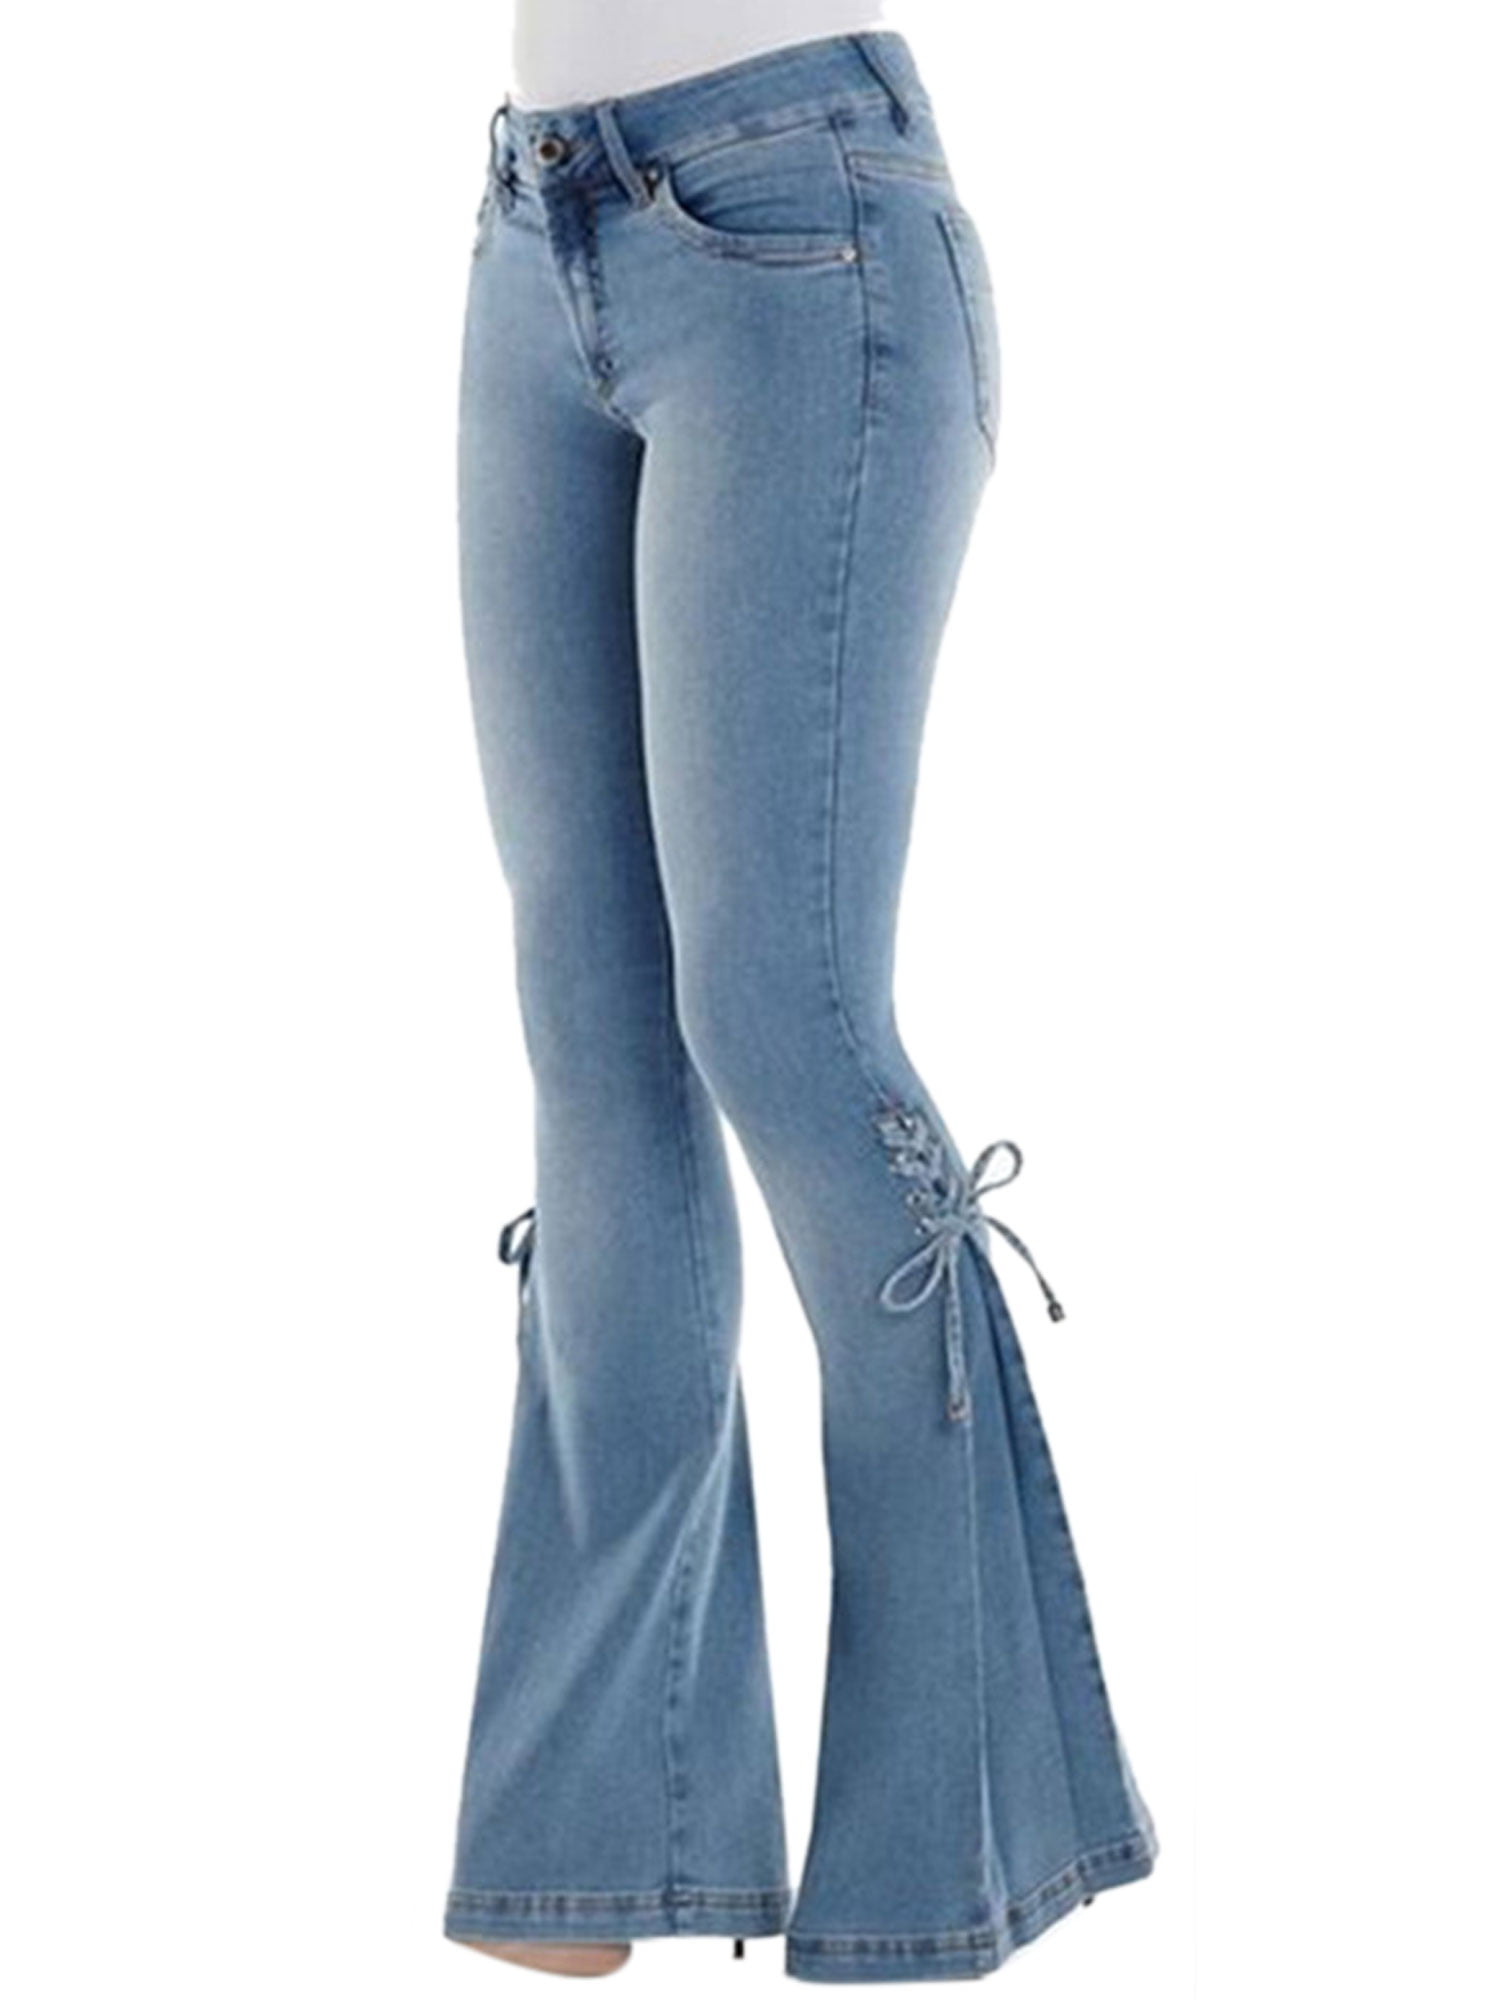 stretch jeans womens walmart